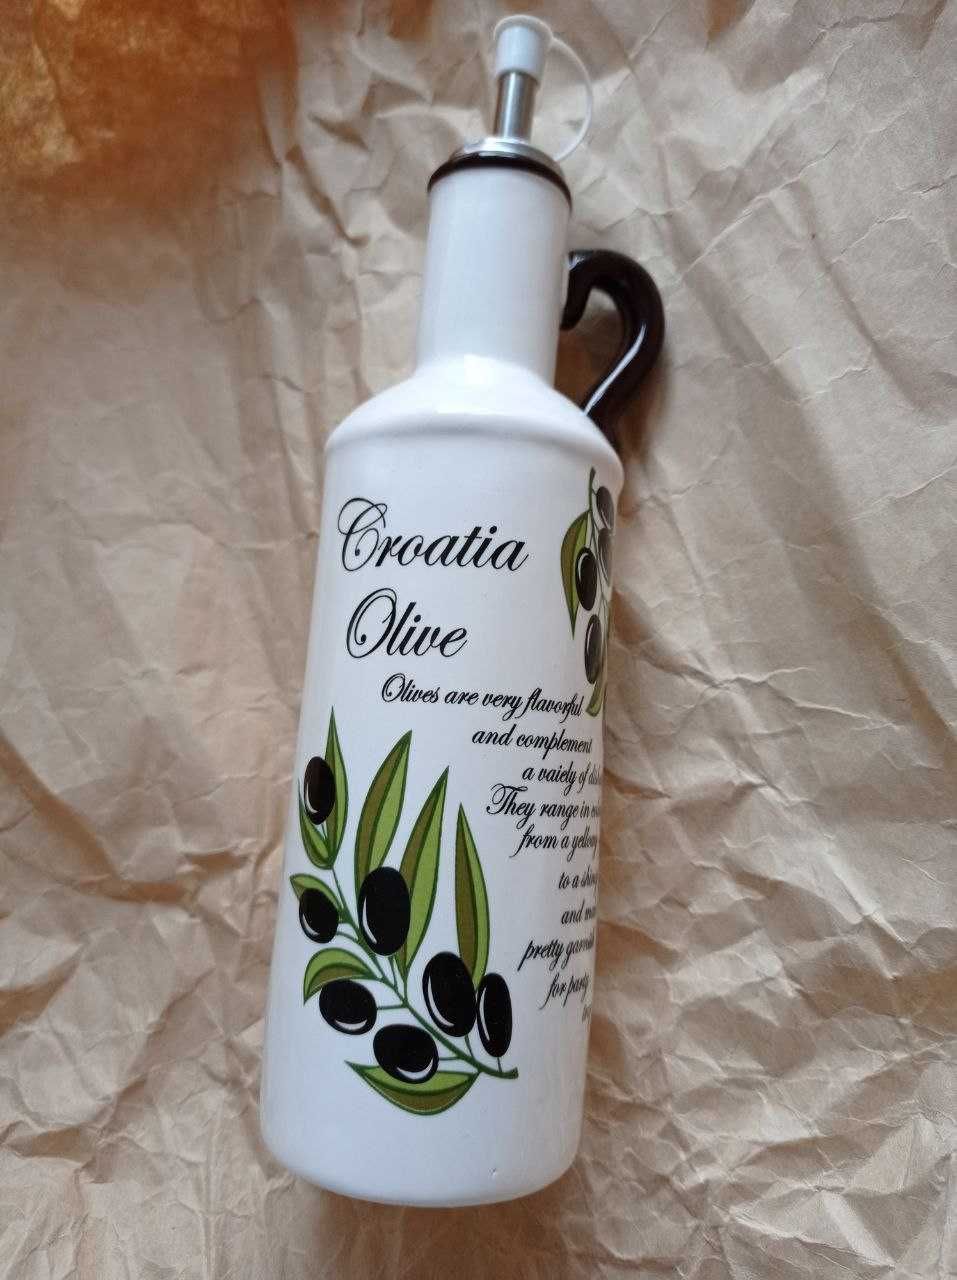 Нова керамічна пляшка для оливкової олії. Привезено з Хорватії.